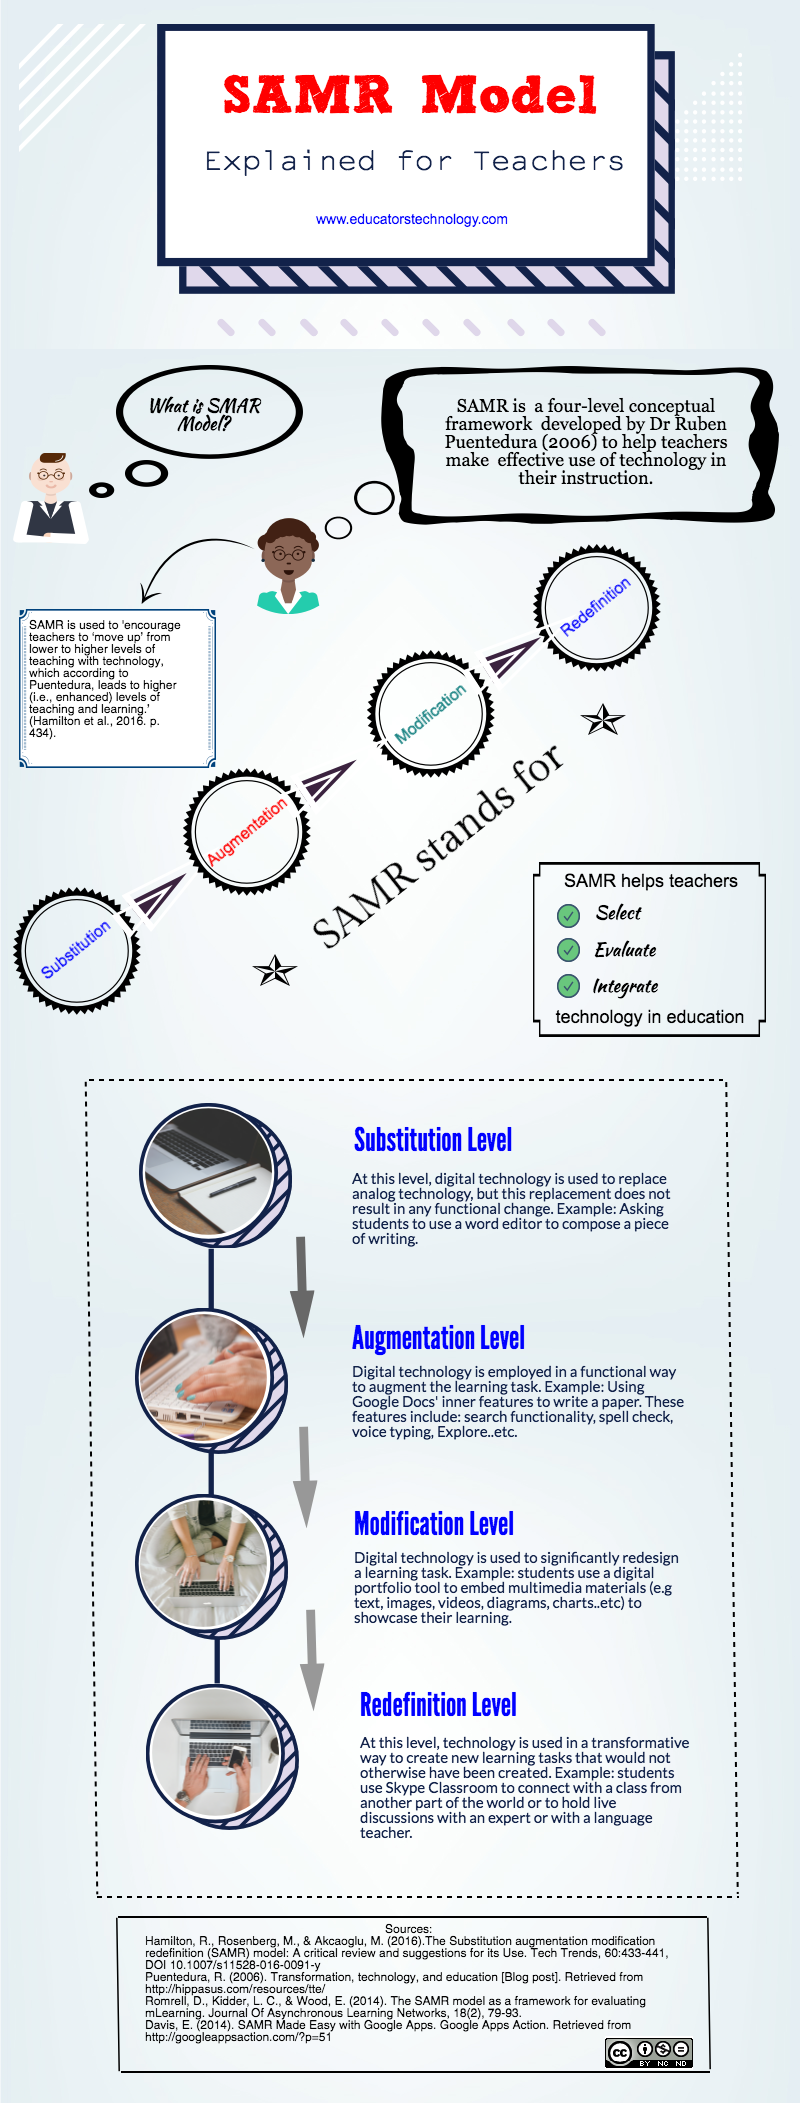 SAMR Model Visually Explained for Teachers